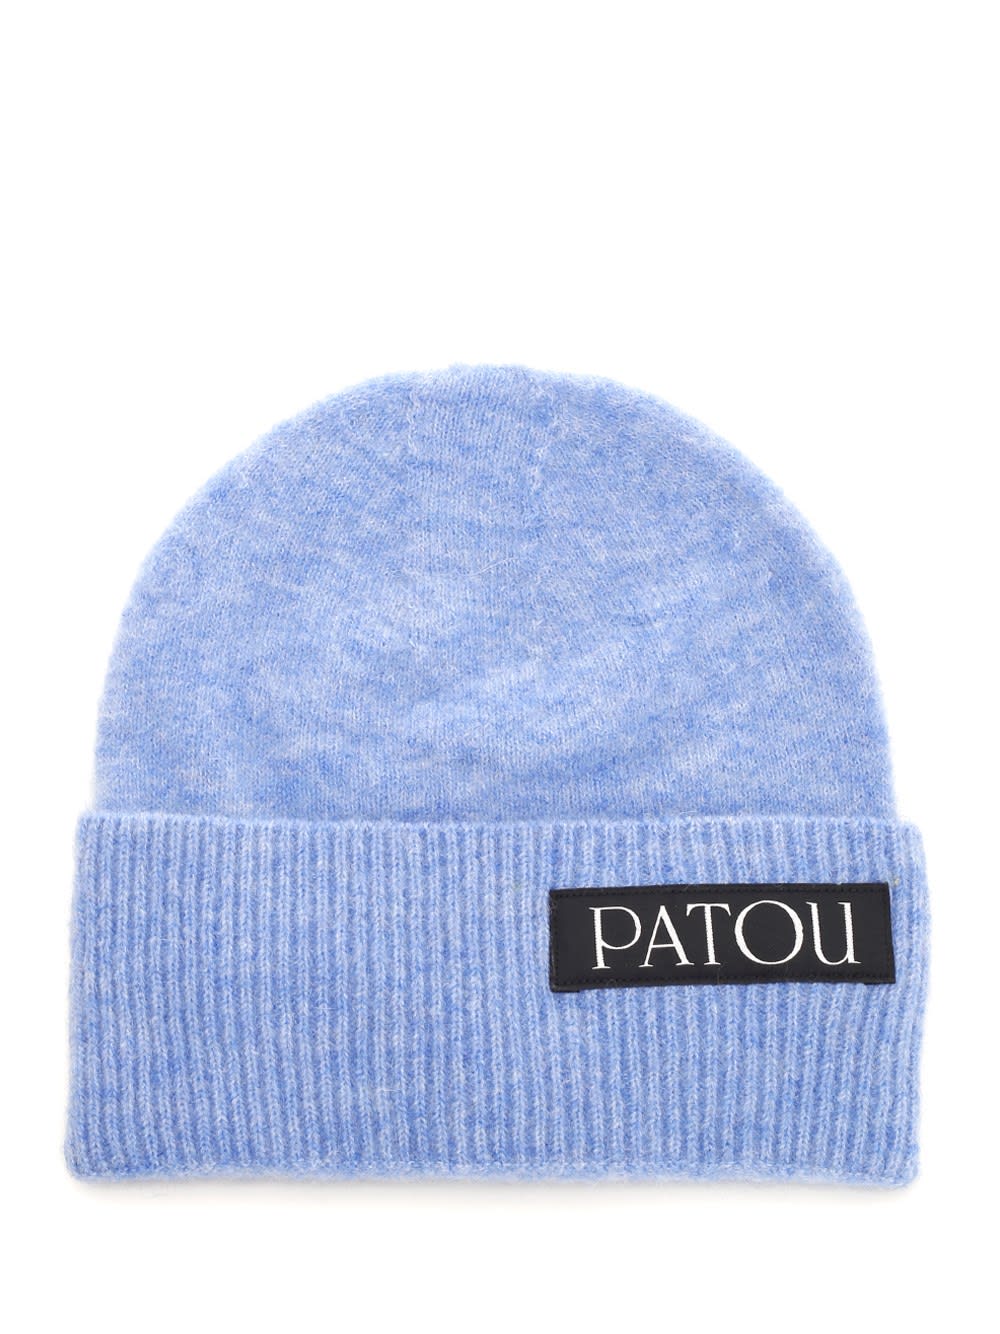 Patou Alpaca Hat In Blue